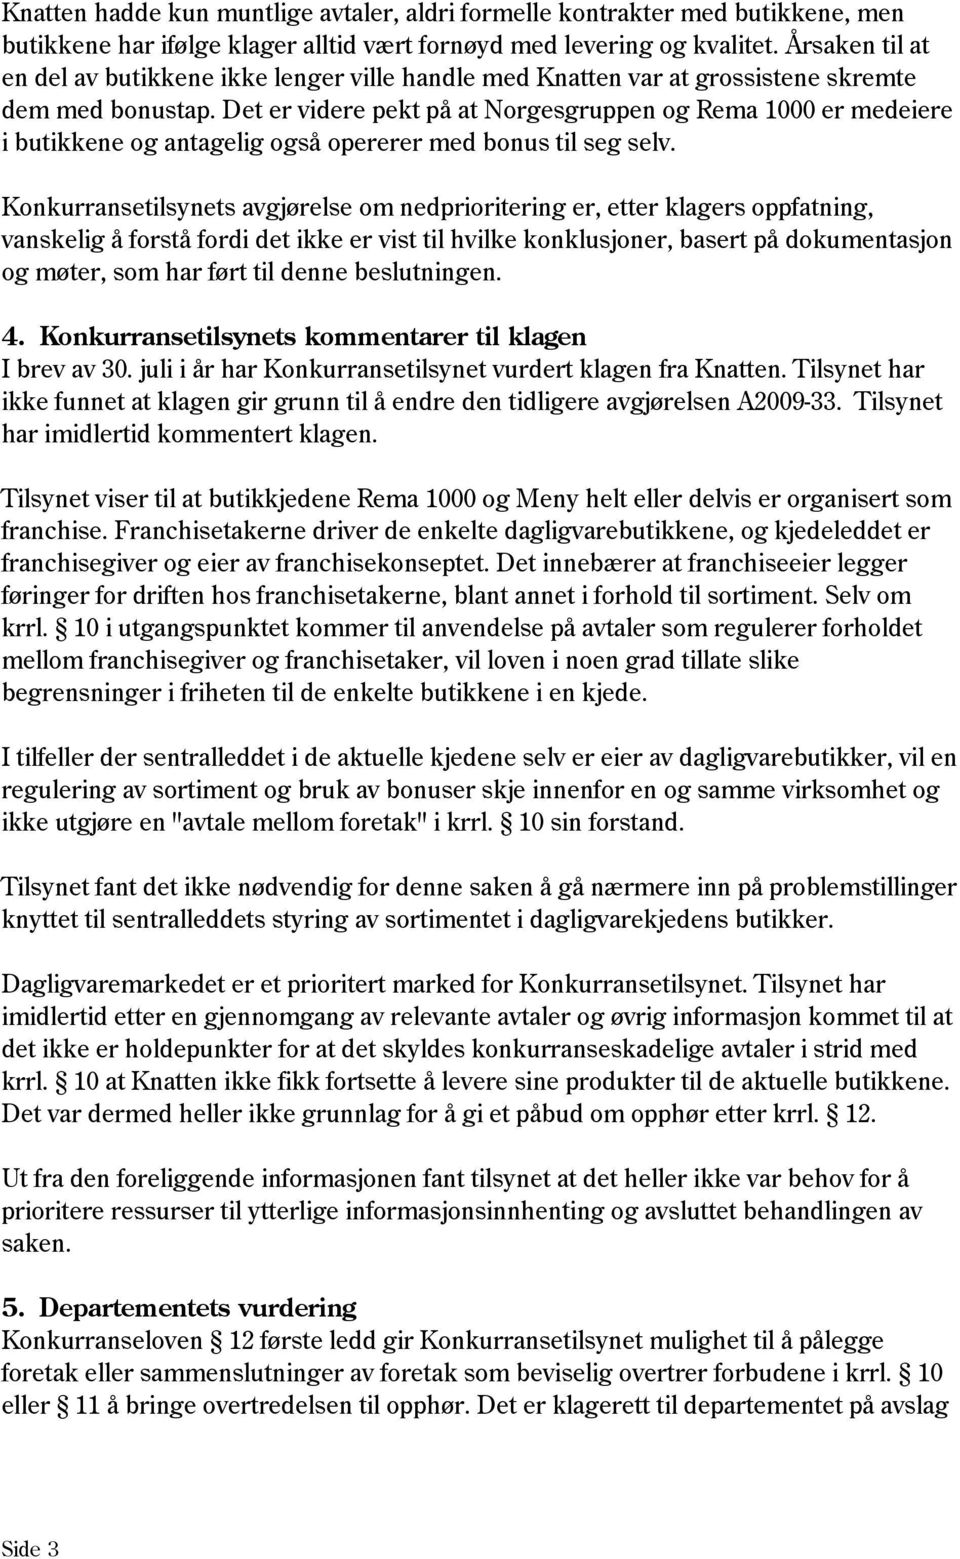 Det er videre pekt på at Norgesgruppen og Rema 1000 er medeiere i butikkene og antagelig også opererer med bonus til seg selv.